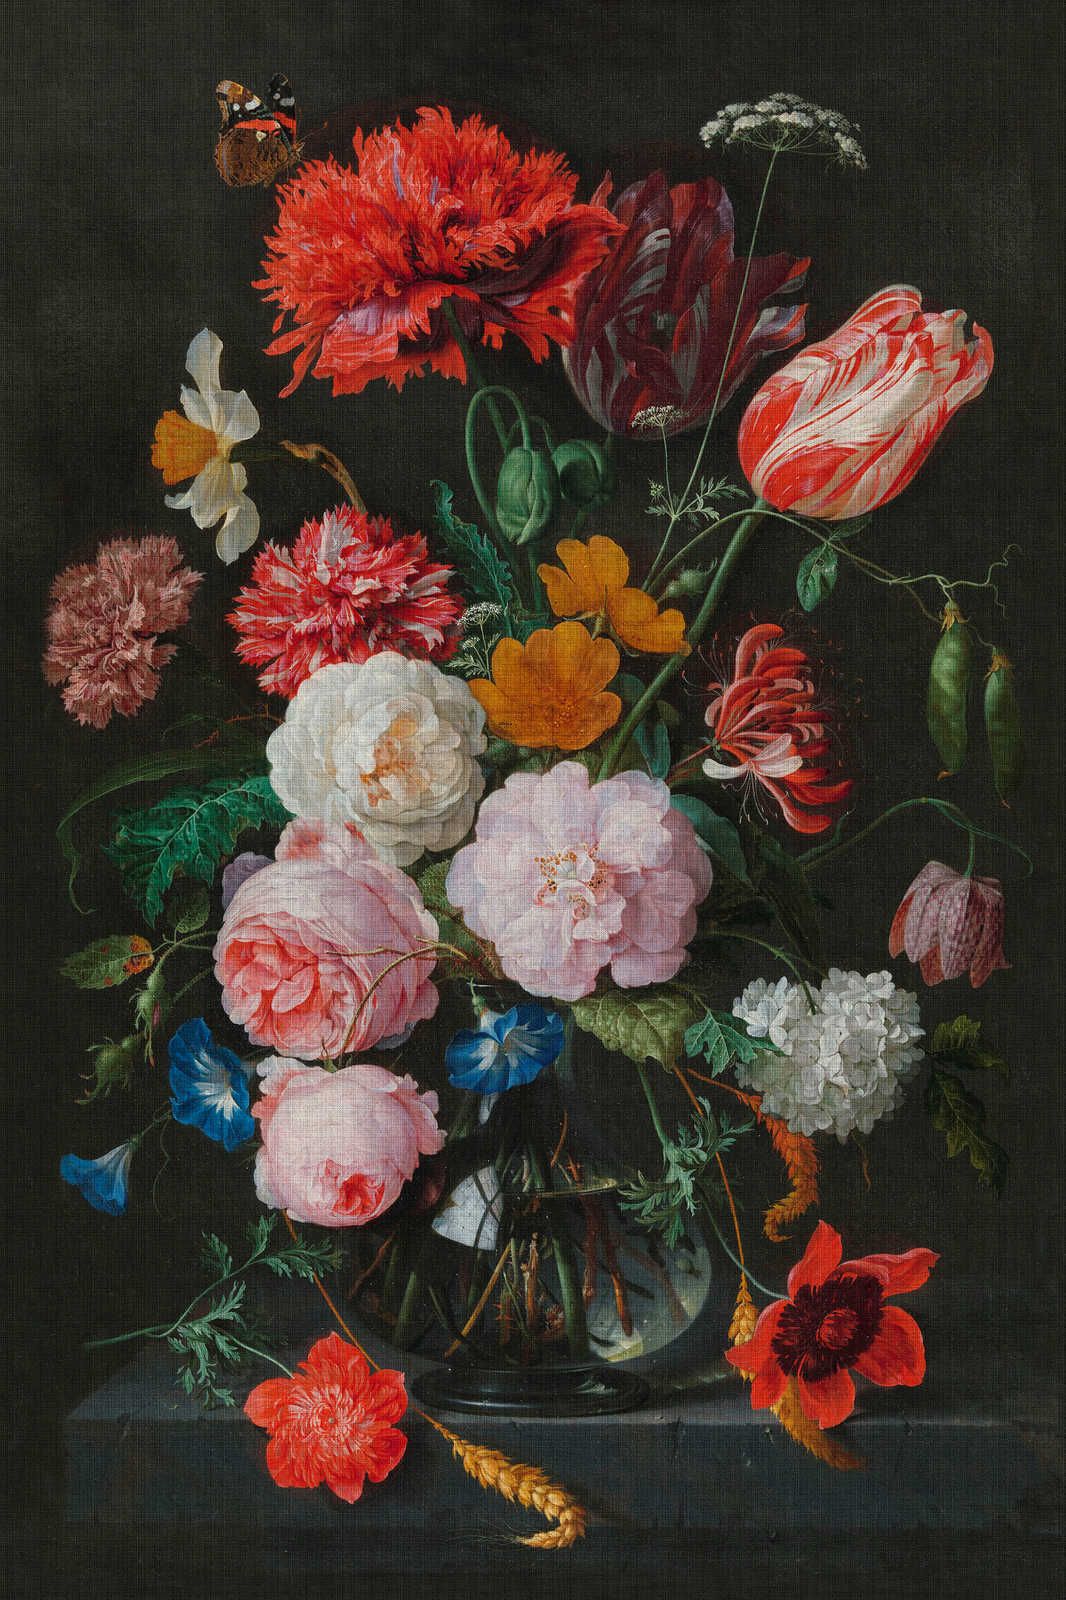             Artists Studio 4 - Leinwandbild Blumen Stillleben mit Rosen – 0,60 m x 0,90 m
        